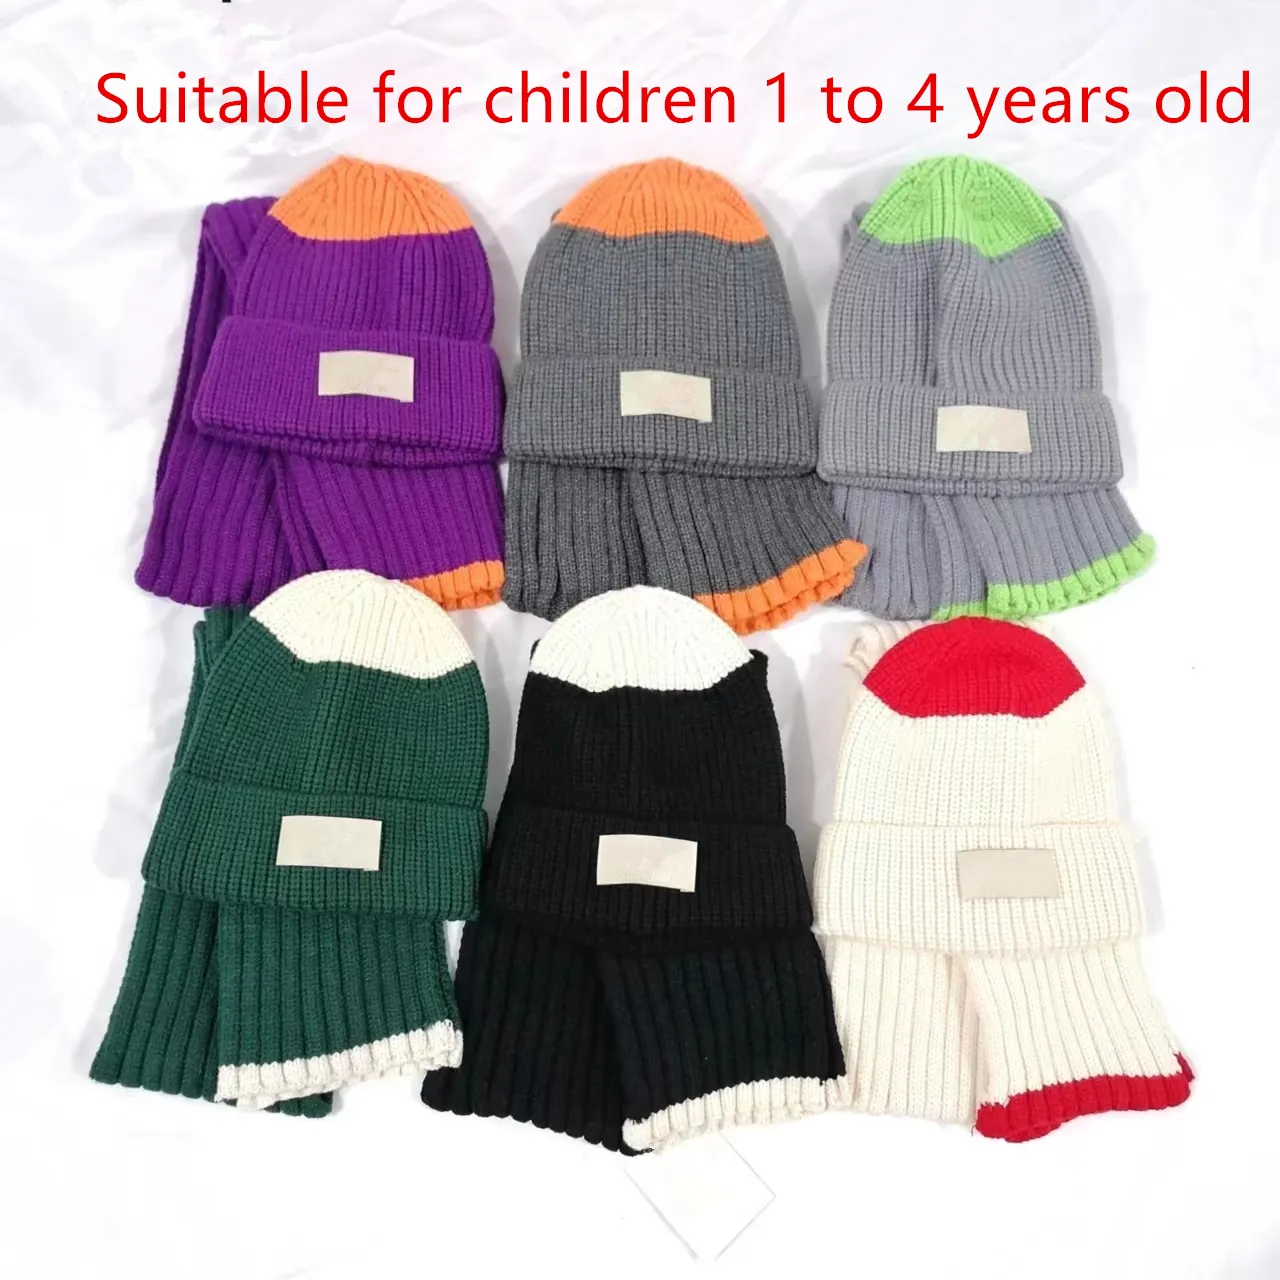 Sıcak kış fular Beanies çocuklar için set şapka ve eşarp takım elbise moda tasarımcısı Beanie 1 ila 4 yaş arası çocuklar için uygun